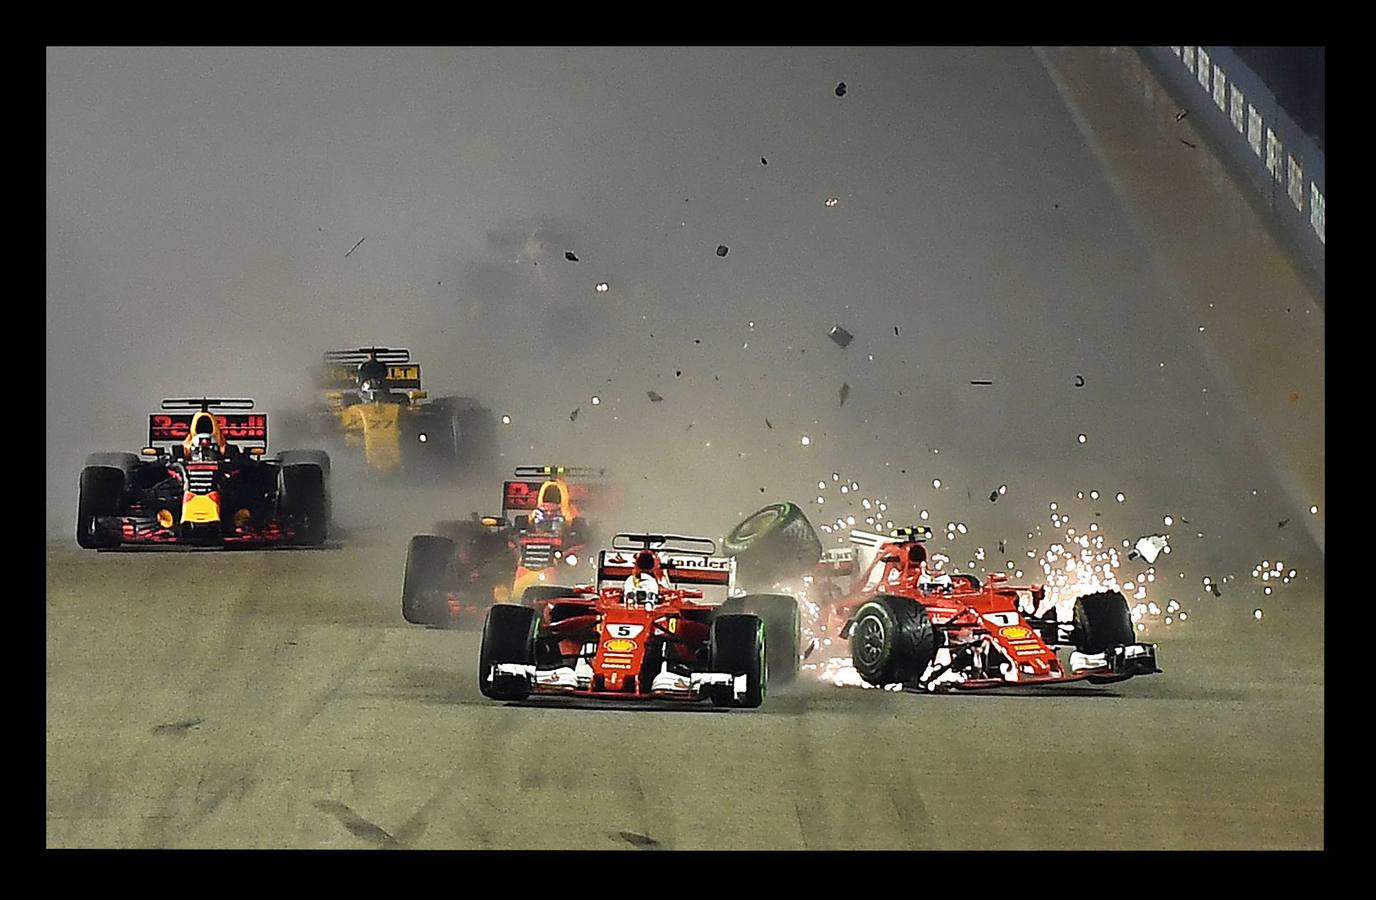 Septiembre 2017. En una pista para Ferrari, Sebastian Vettel se quedó fuera tras un choque triple entre él, Verstappen y Raikkonen durante el mundial de Singapur.